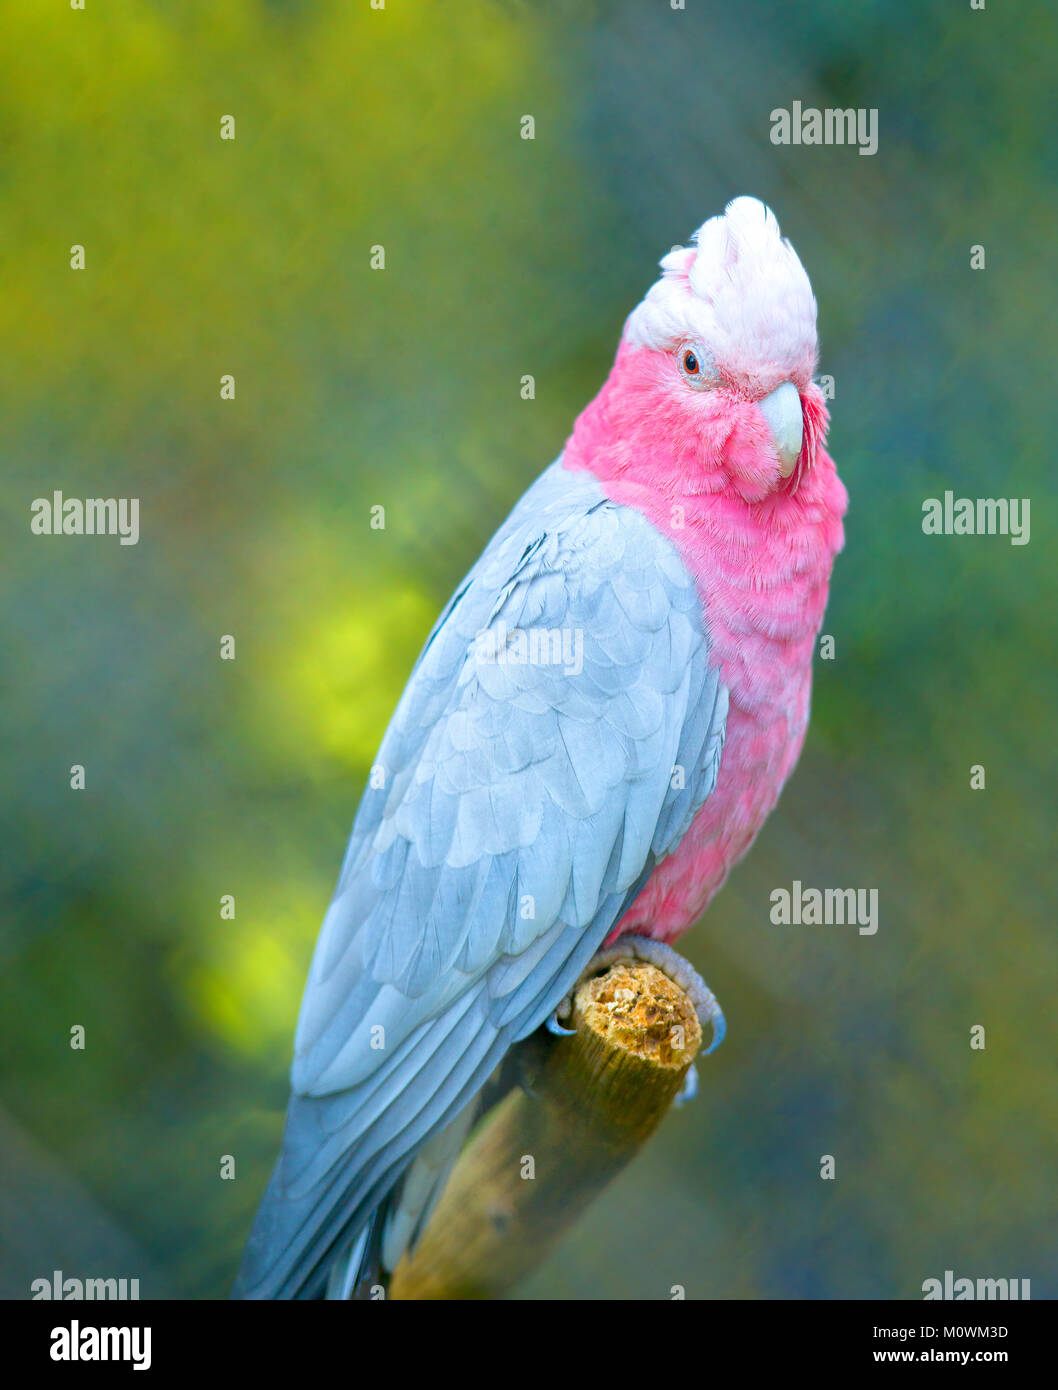 Pappagallo rosa immagini e fotografie stock ad alta risoluzione - Alamy